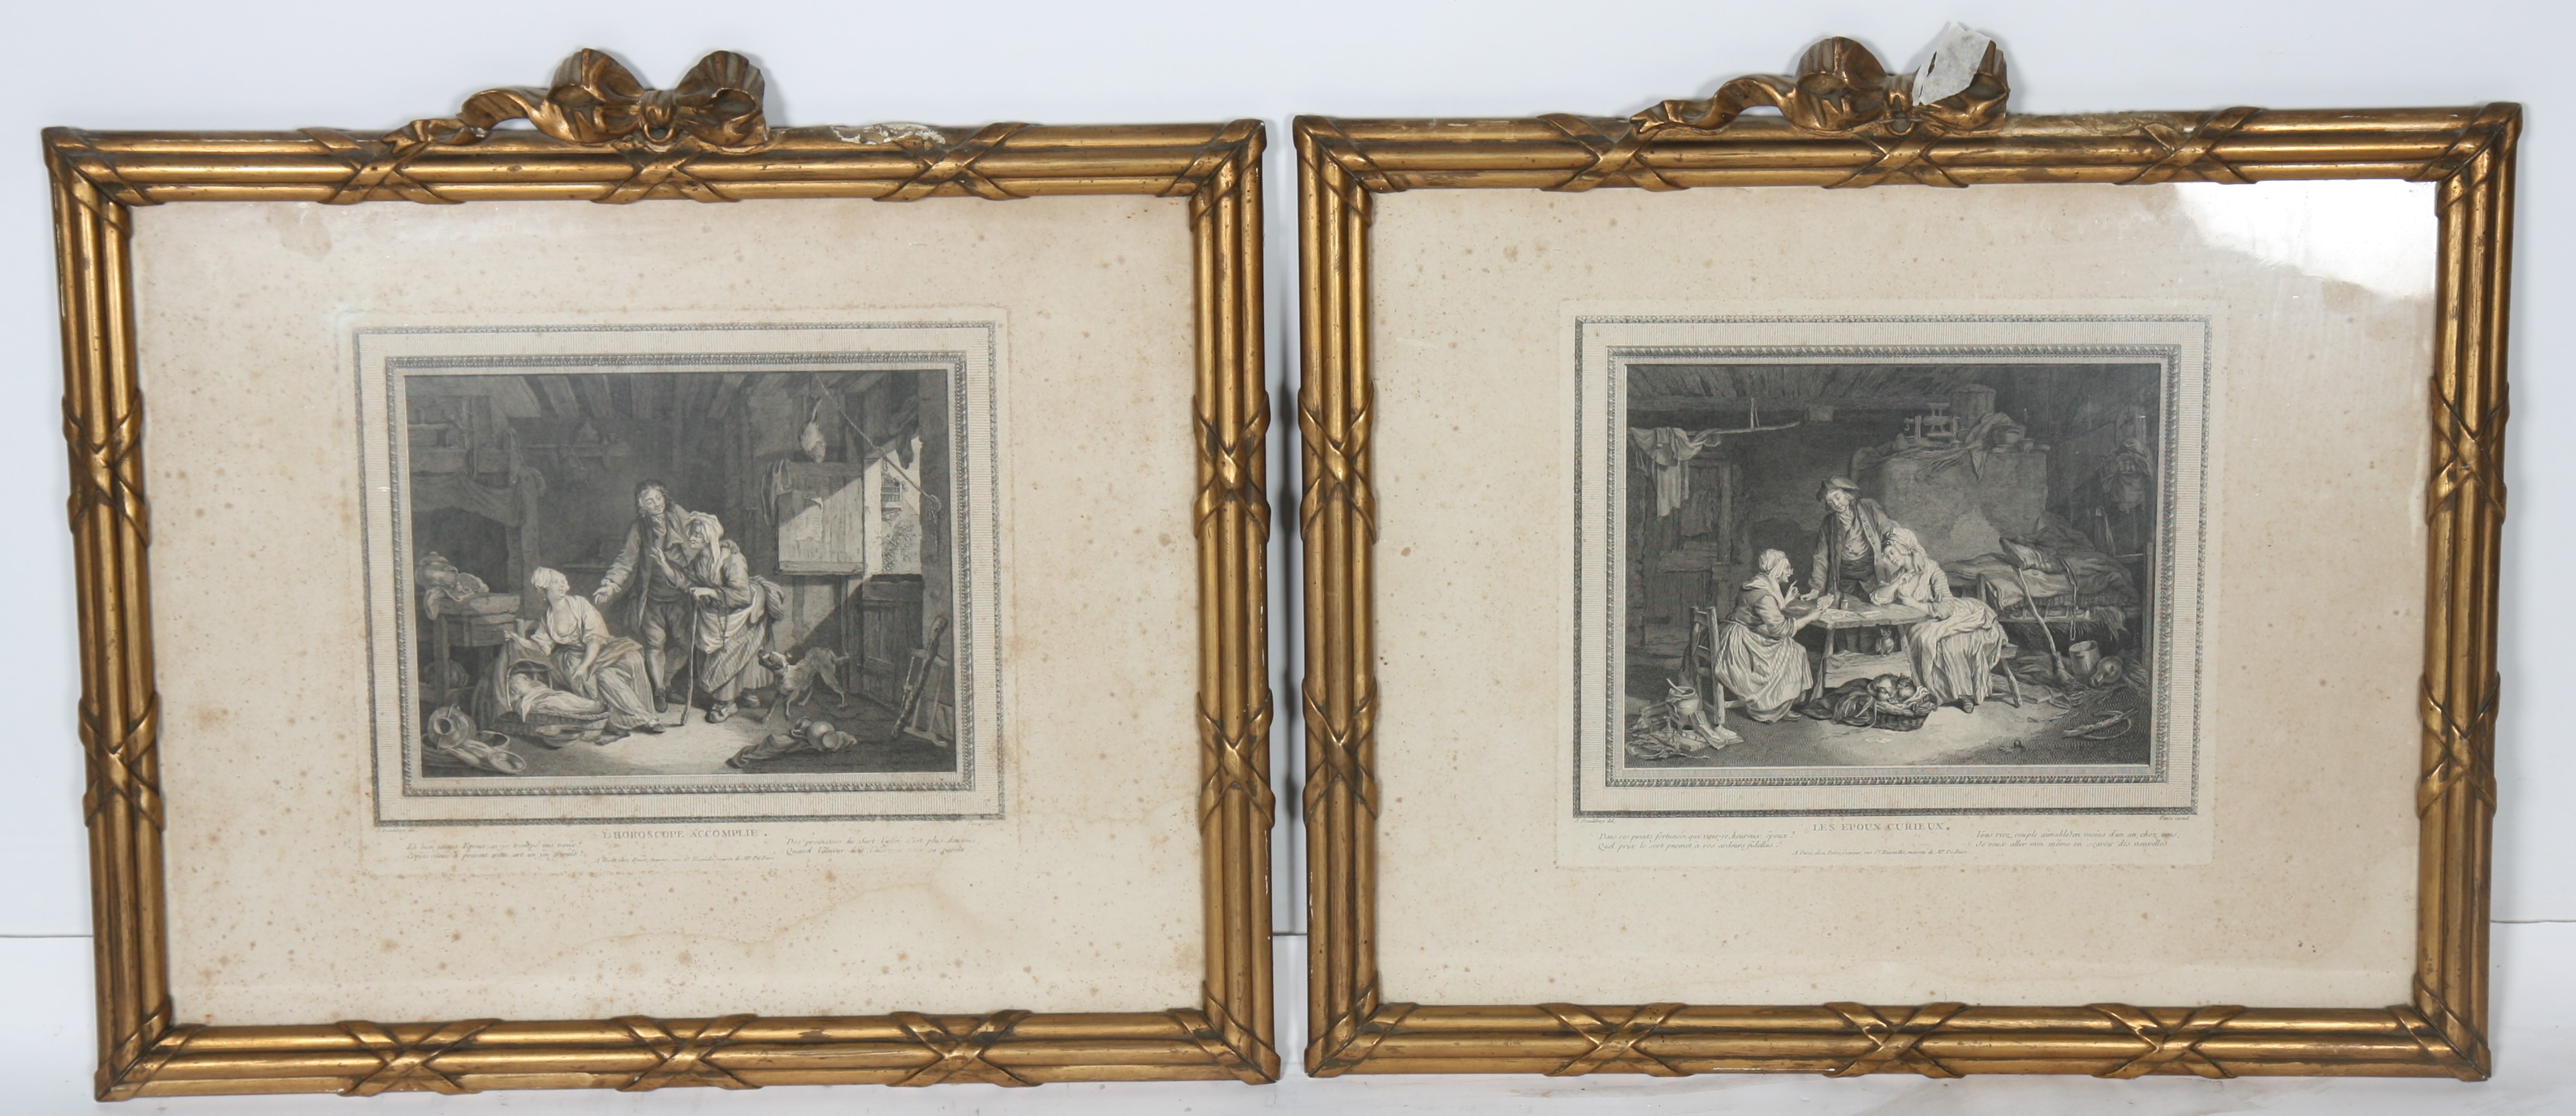 PAIRE DE GRAVURES ENCADREES Paire de gravures en noir et blanc à scènes XVIIIè intitulées "Les Epoux